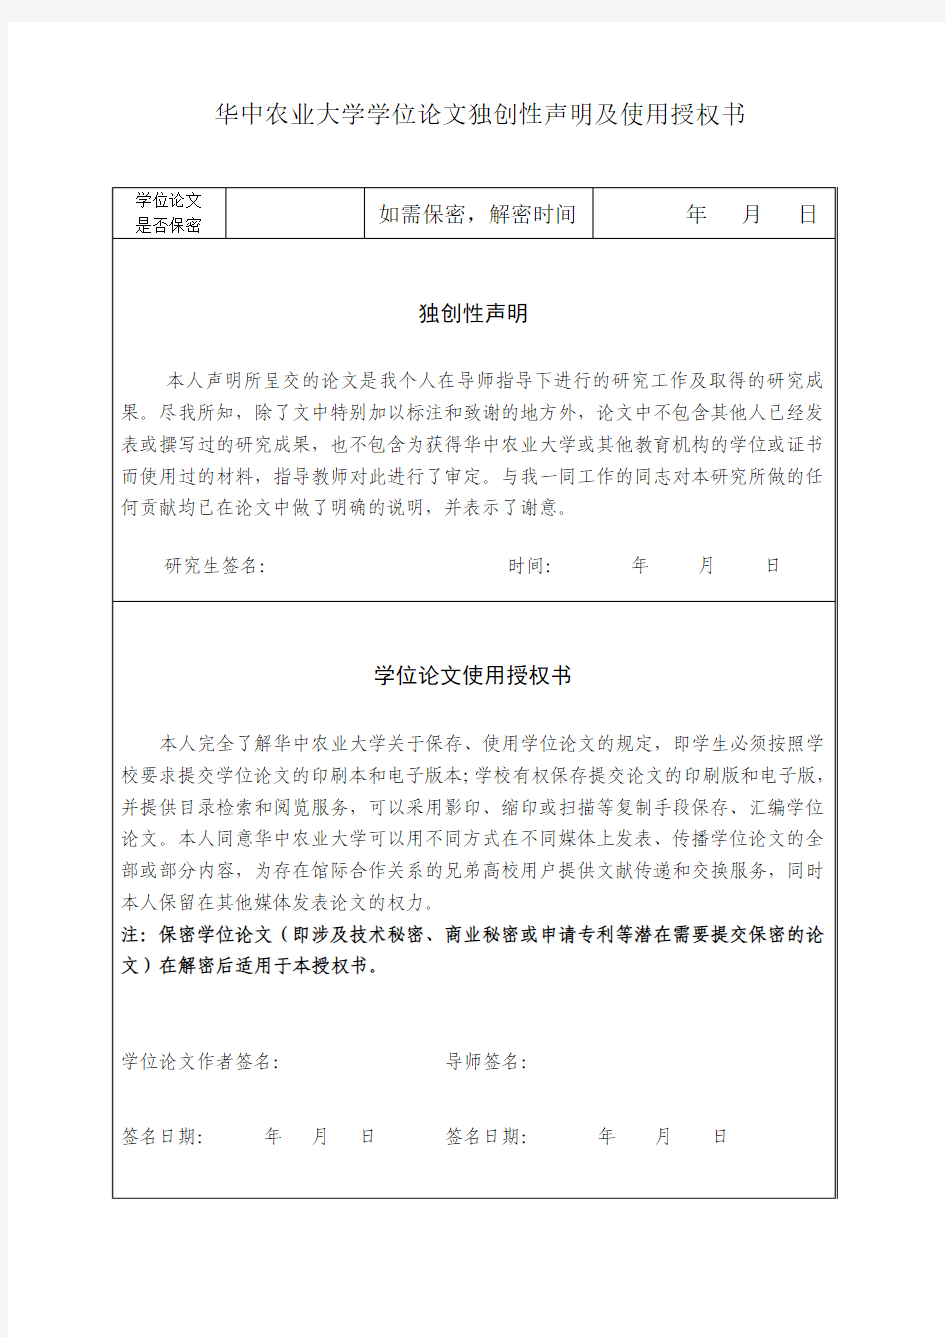 华中农业大学学位论文独创性声明及使用授权书